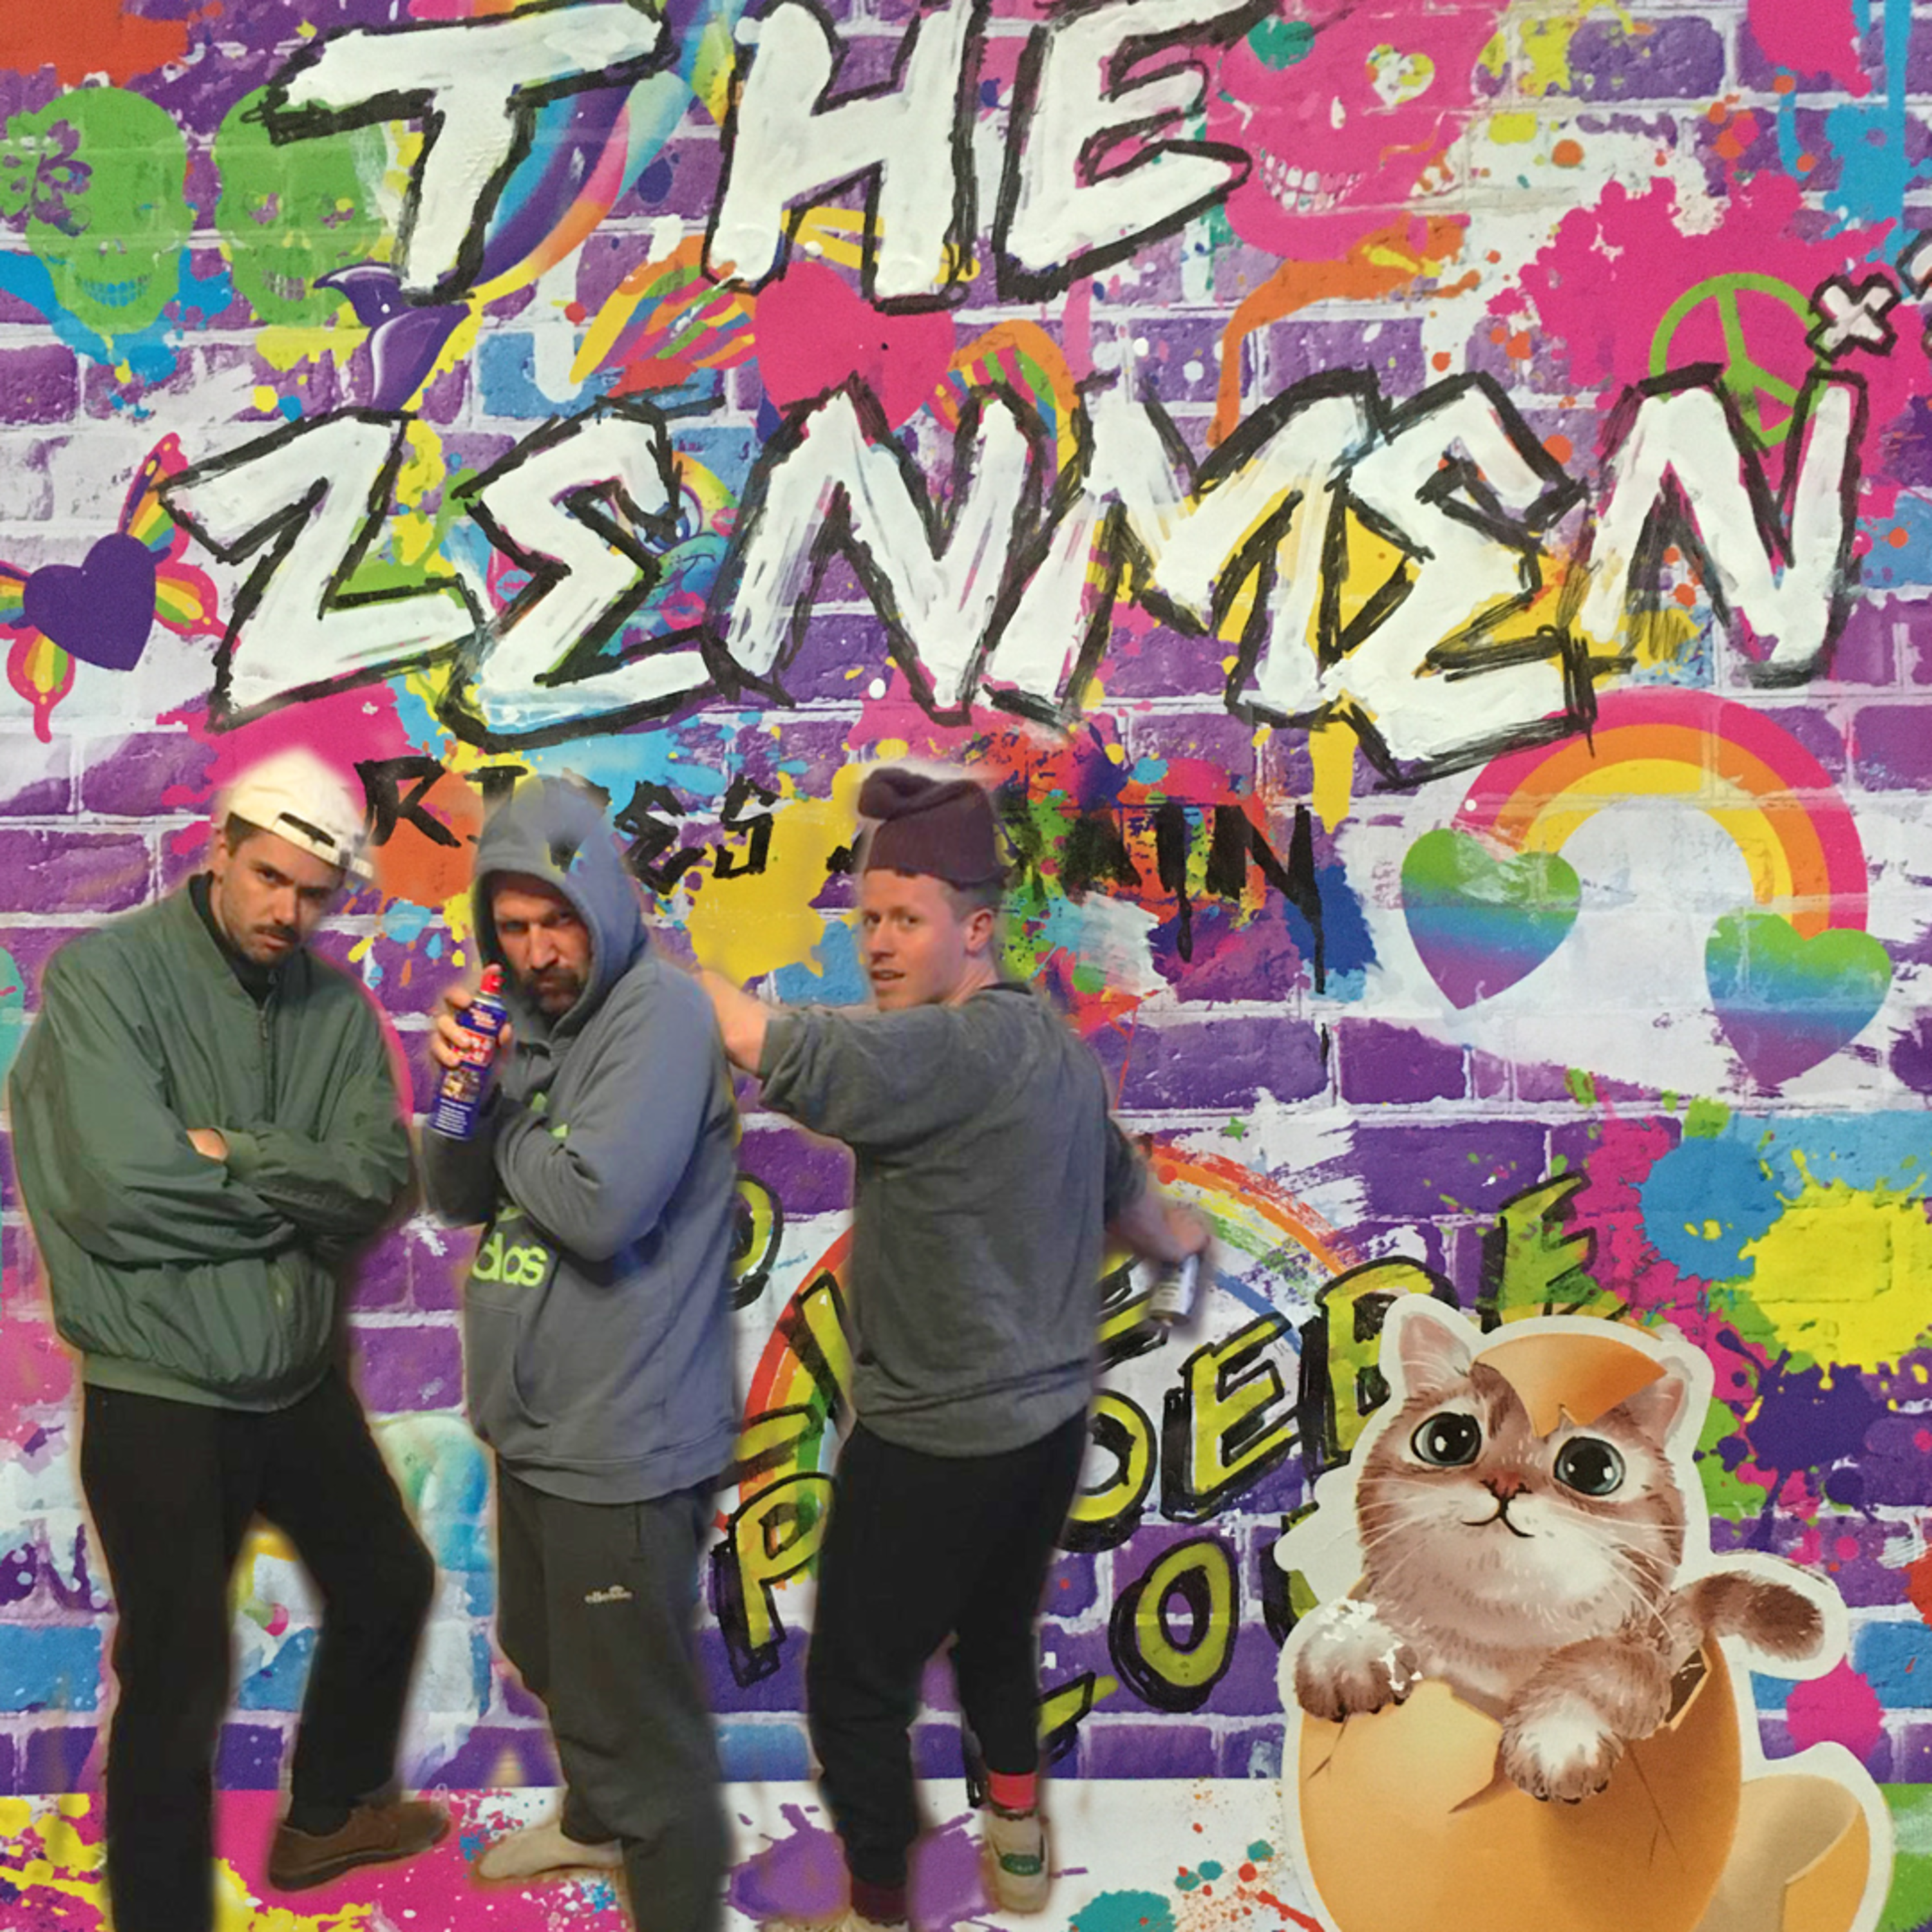 The Zenmenn